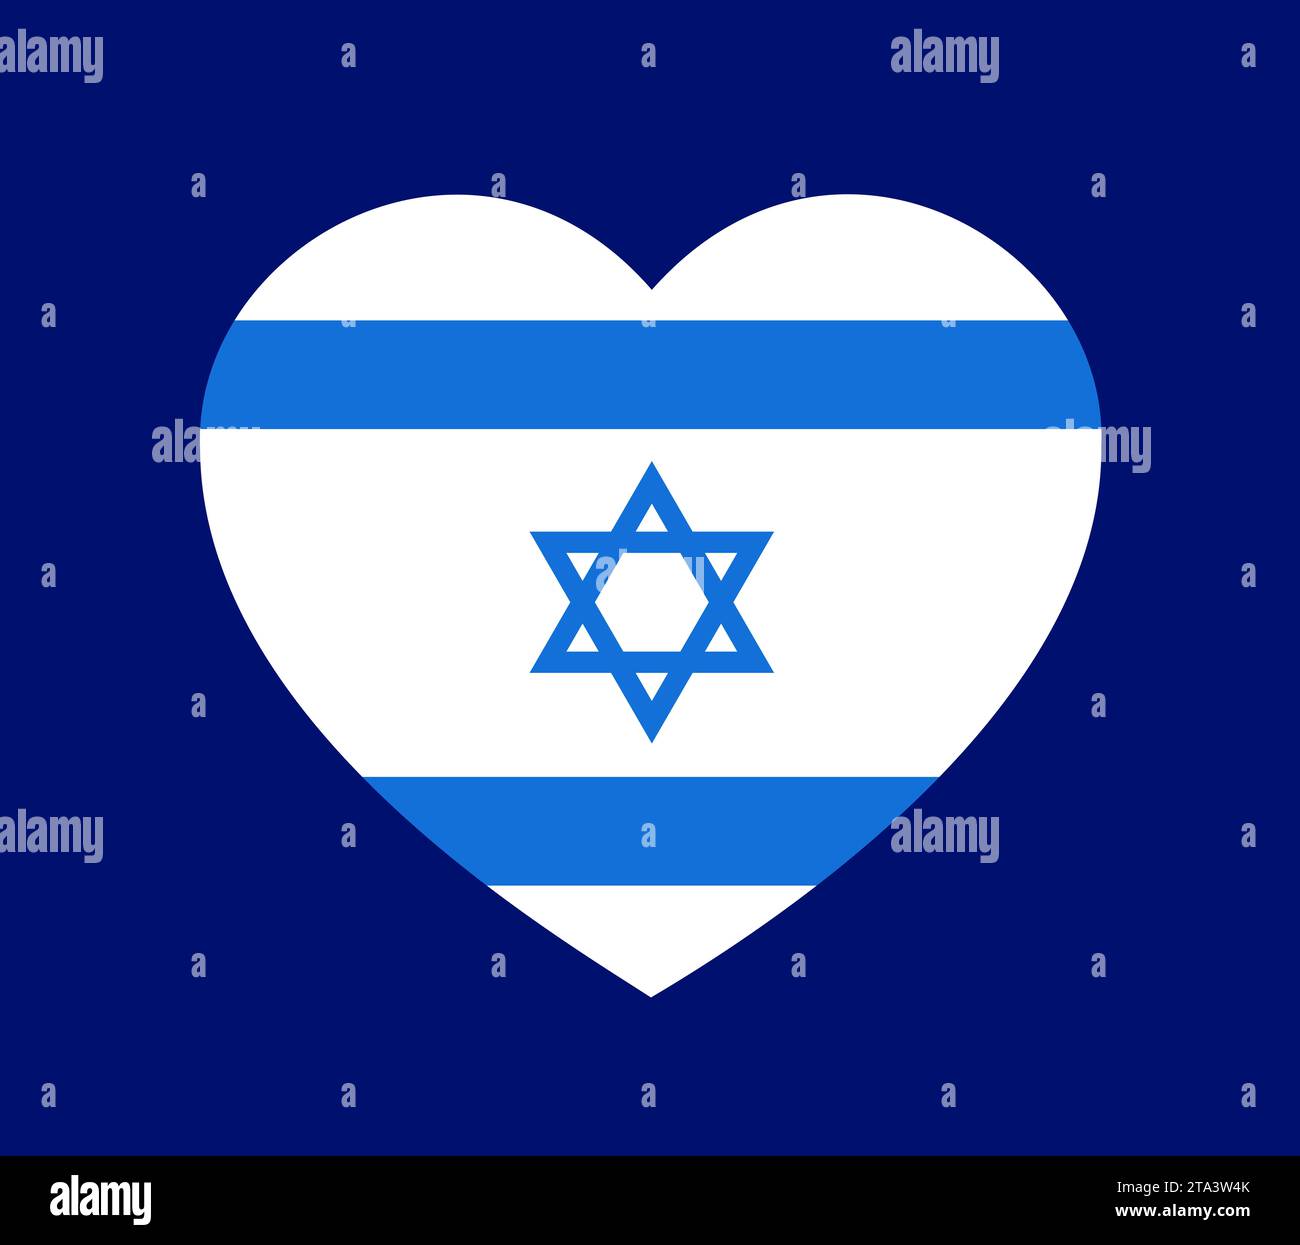 Amor corazón con la bandera nacional israelí - apoyo, simpatía y solidaridad con Israel. Ilustración vectorial. Foto de stock